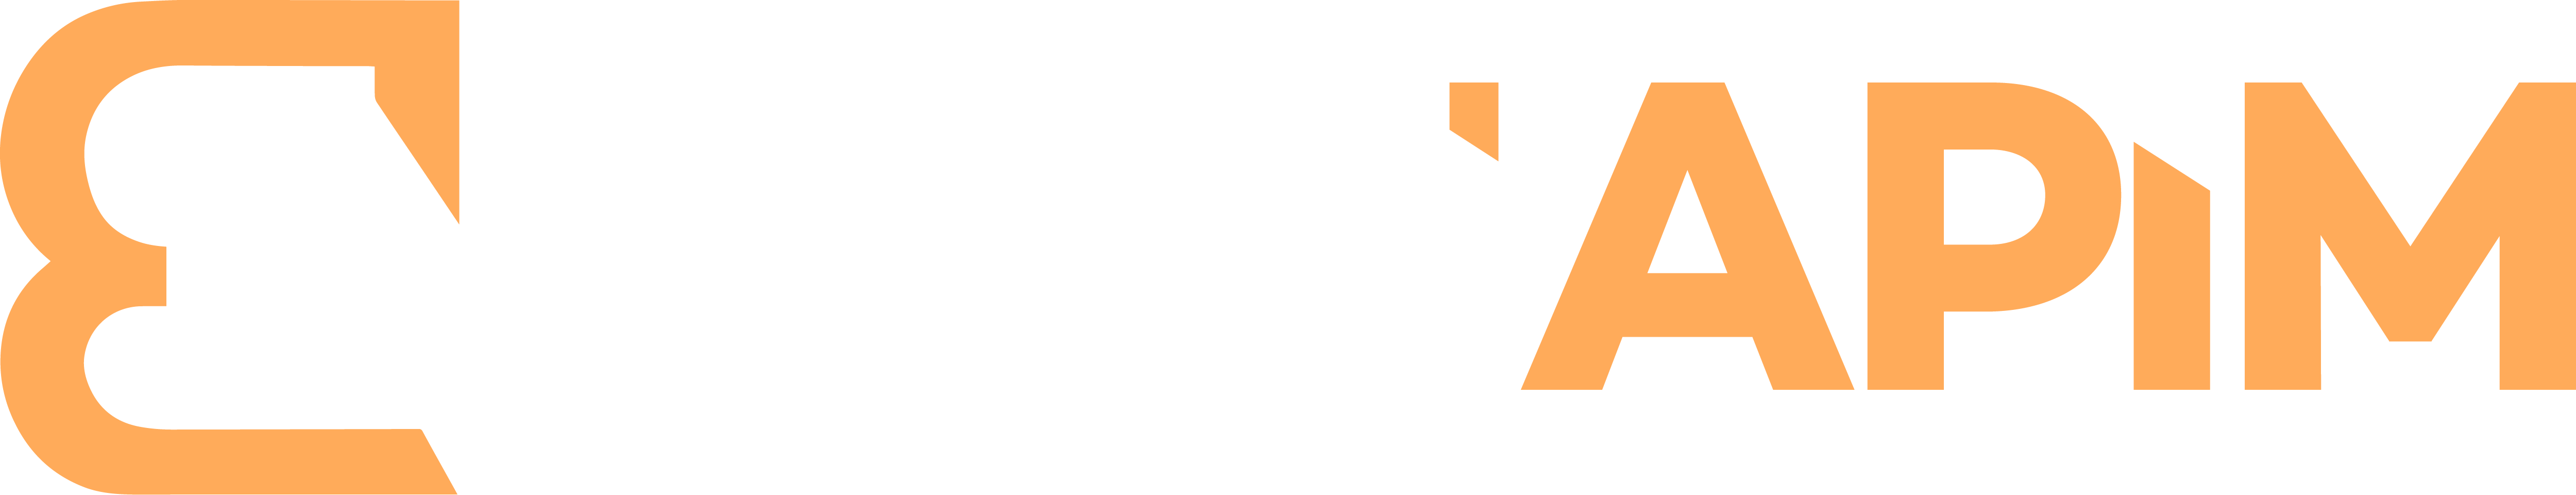 Bayiapim.com | Türkiye'nin Sağlayıcı SMM Paneli